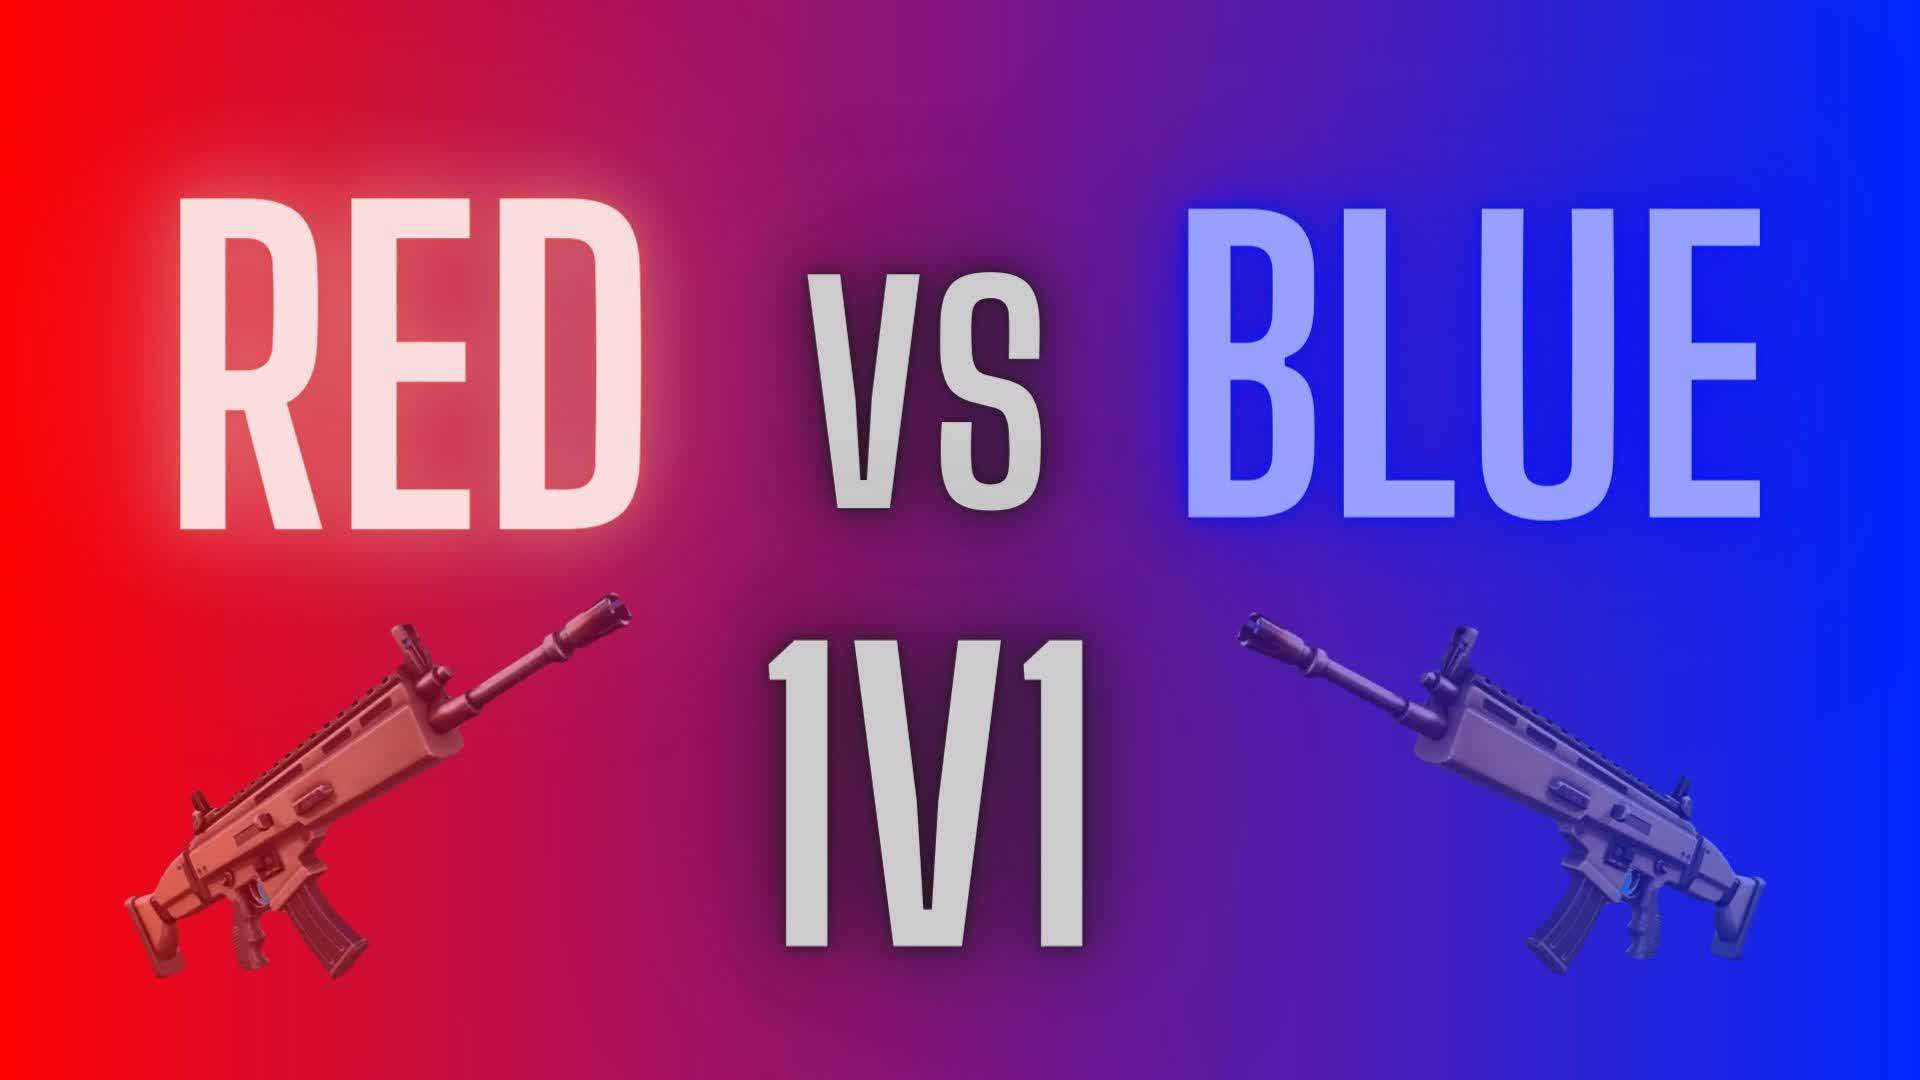 1v1 Red vs Blue